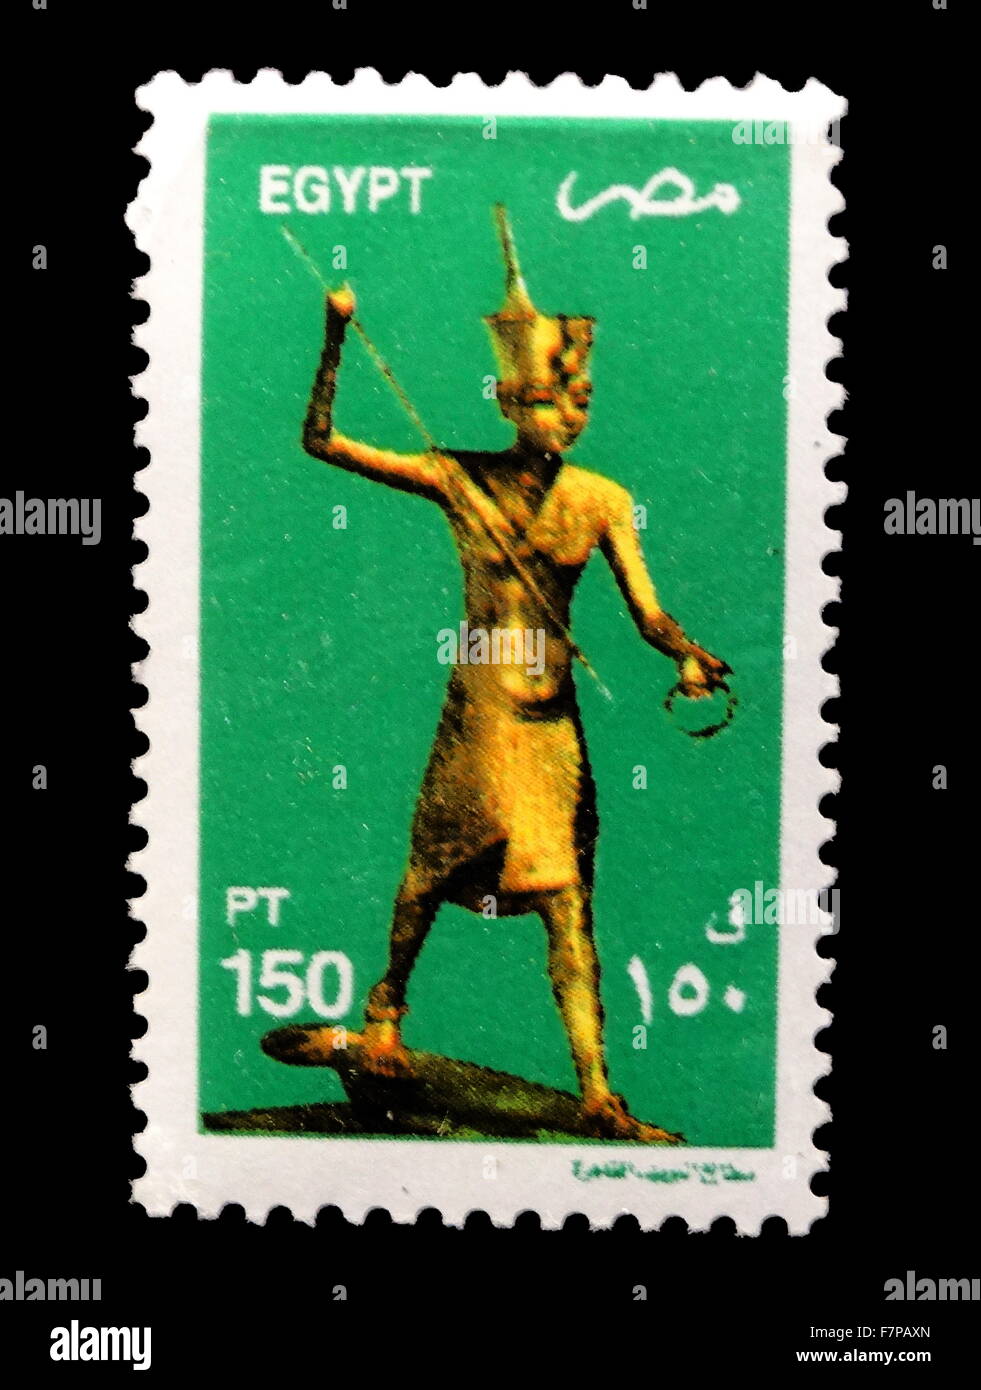 2000 ; timbres-poste égyptien avec artefact de la tombe de Toutankhamon, pharaon égyptien de la xviiie dynastie (jugé ca. 1332-1323 av. J.-C.). Banque D'Images